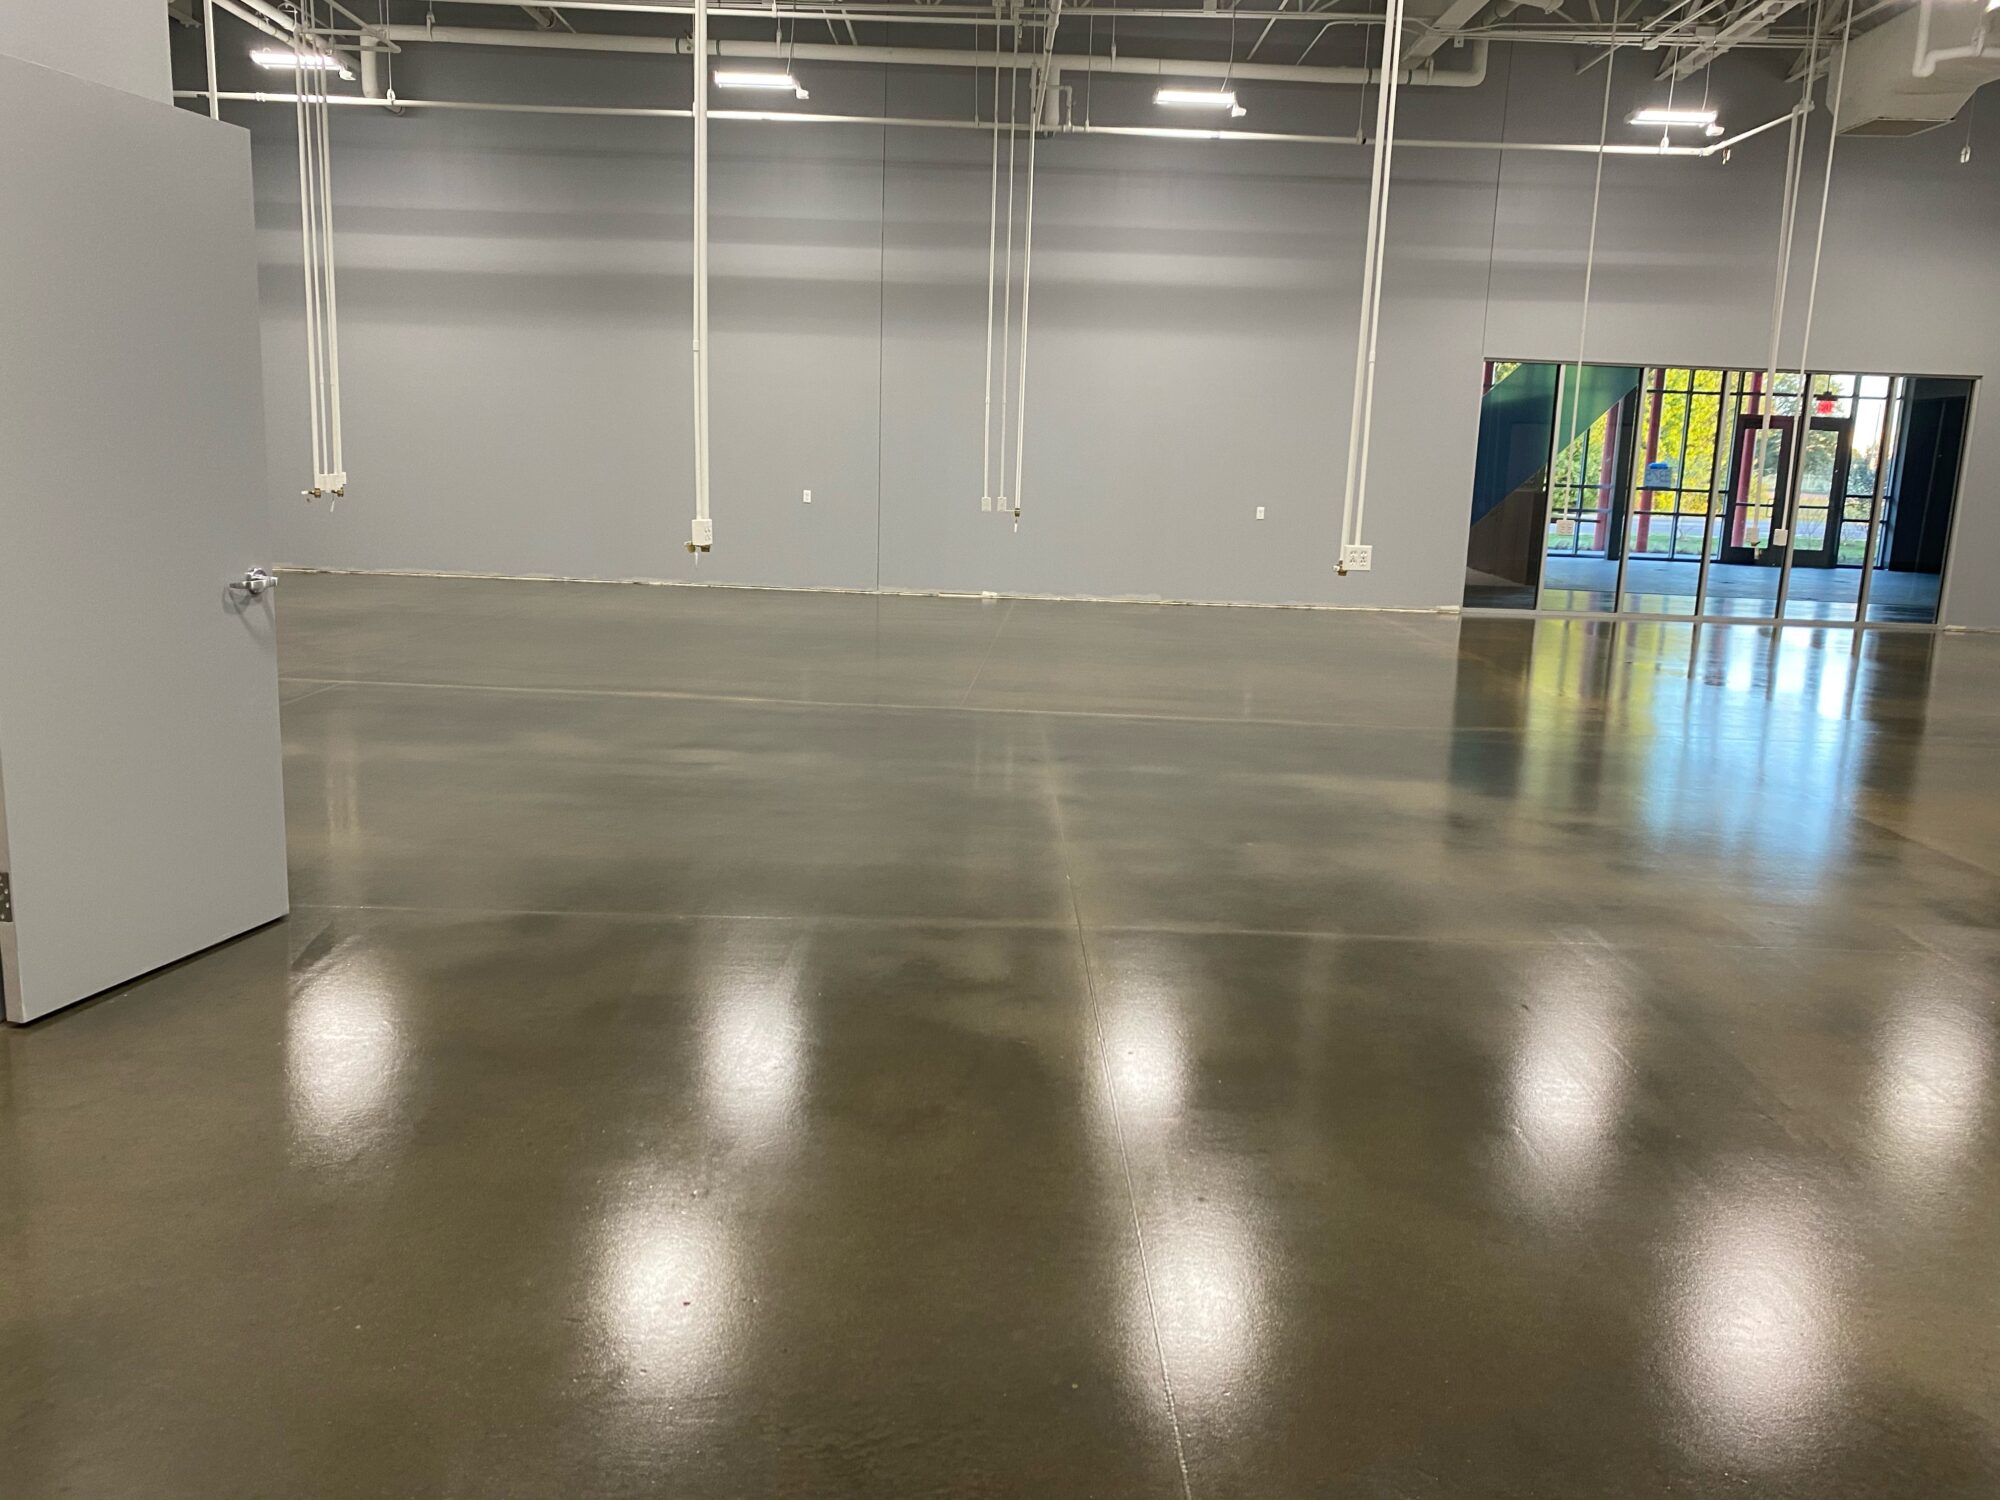 Concrete floor coatings, epoxy floor coatings, epoxy coatings, Industrial Applications Inc, TeamIA, epoxy floor coating, educational center flooring, educational epoxy flooring